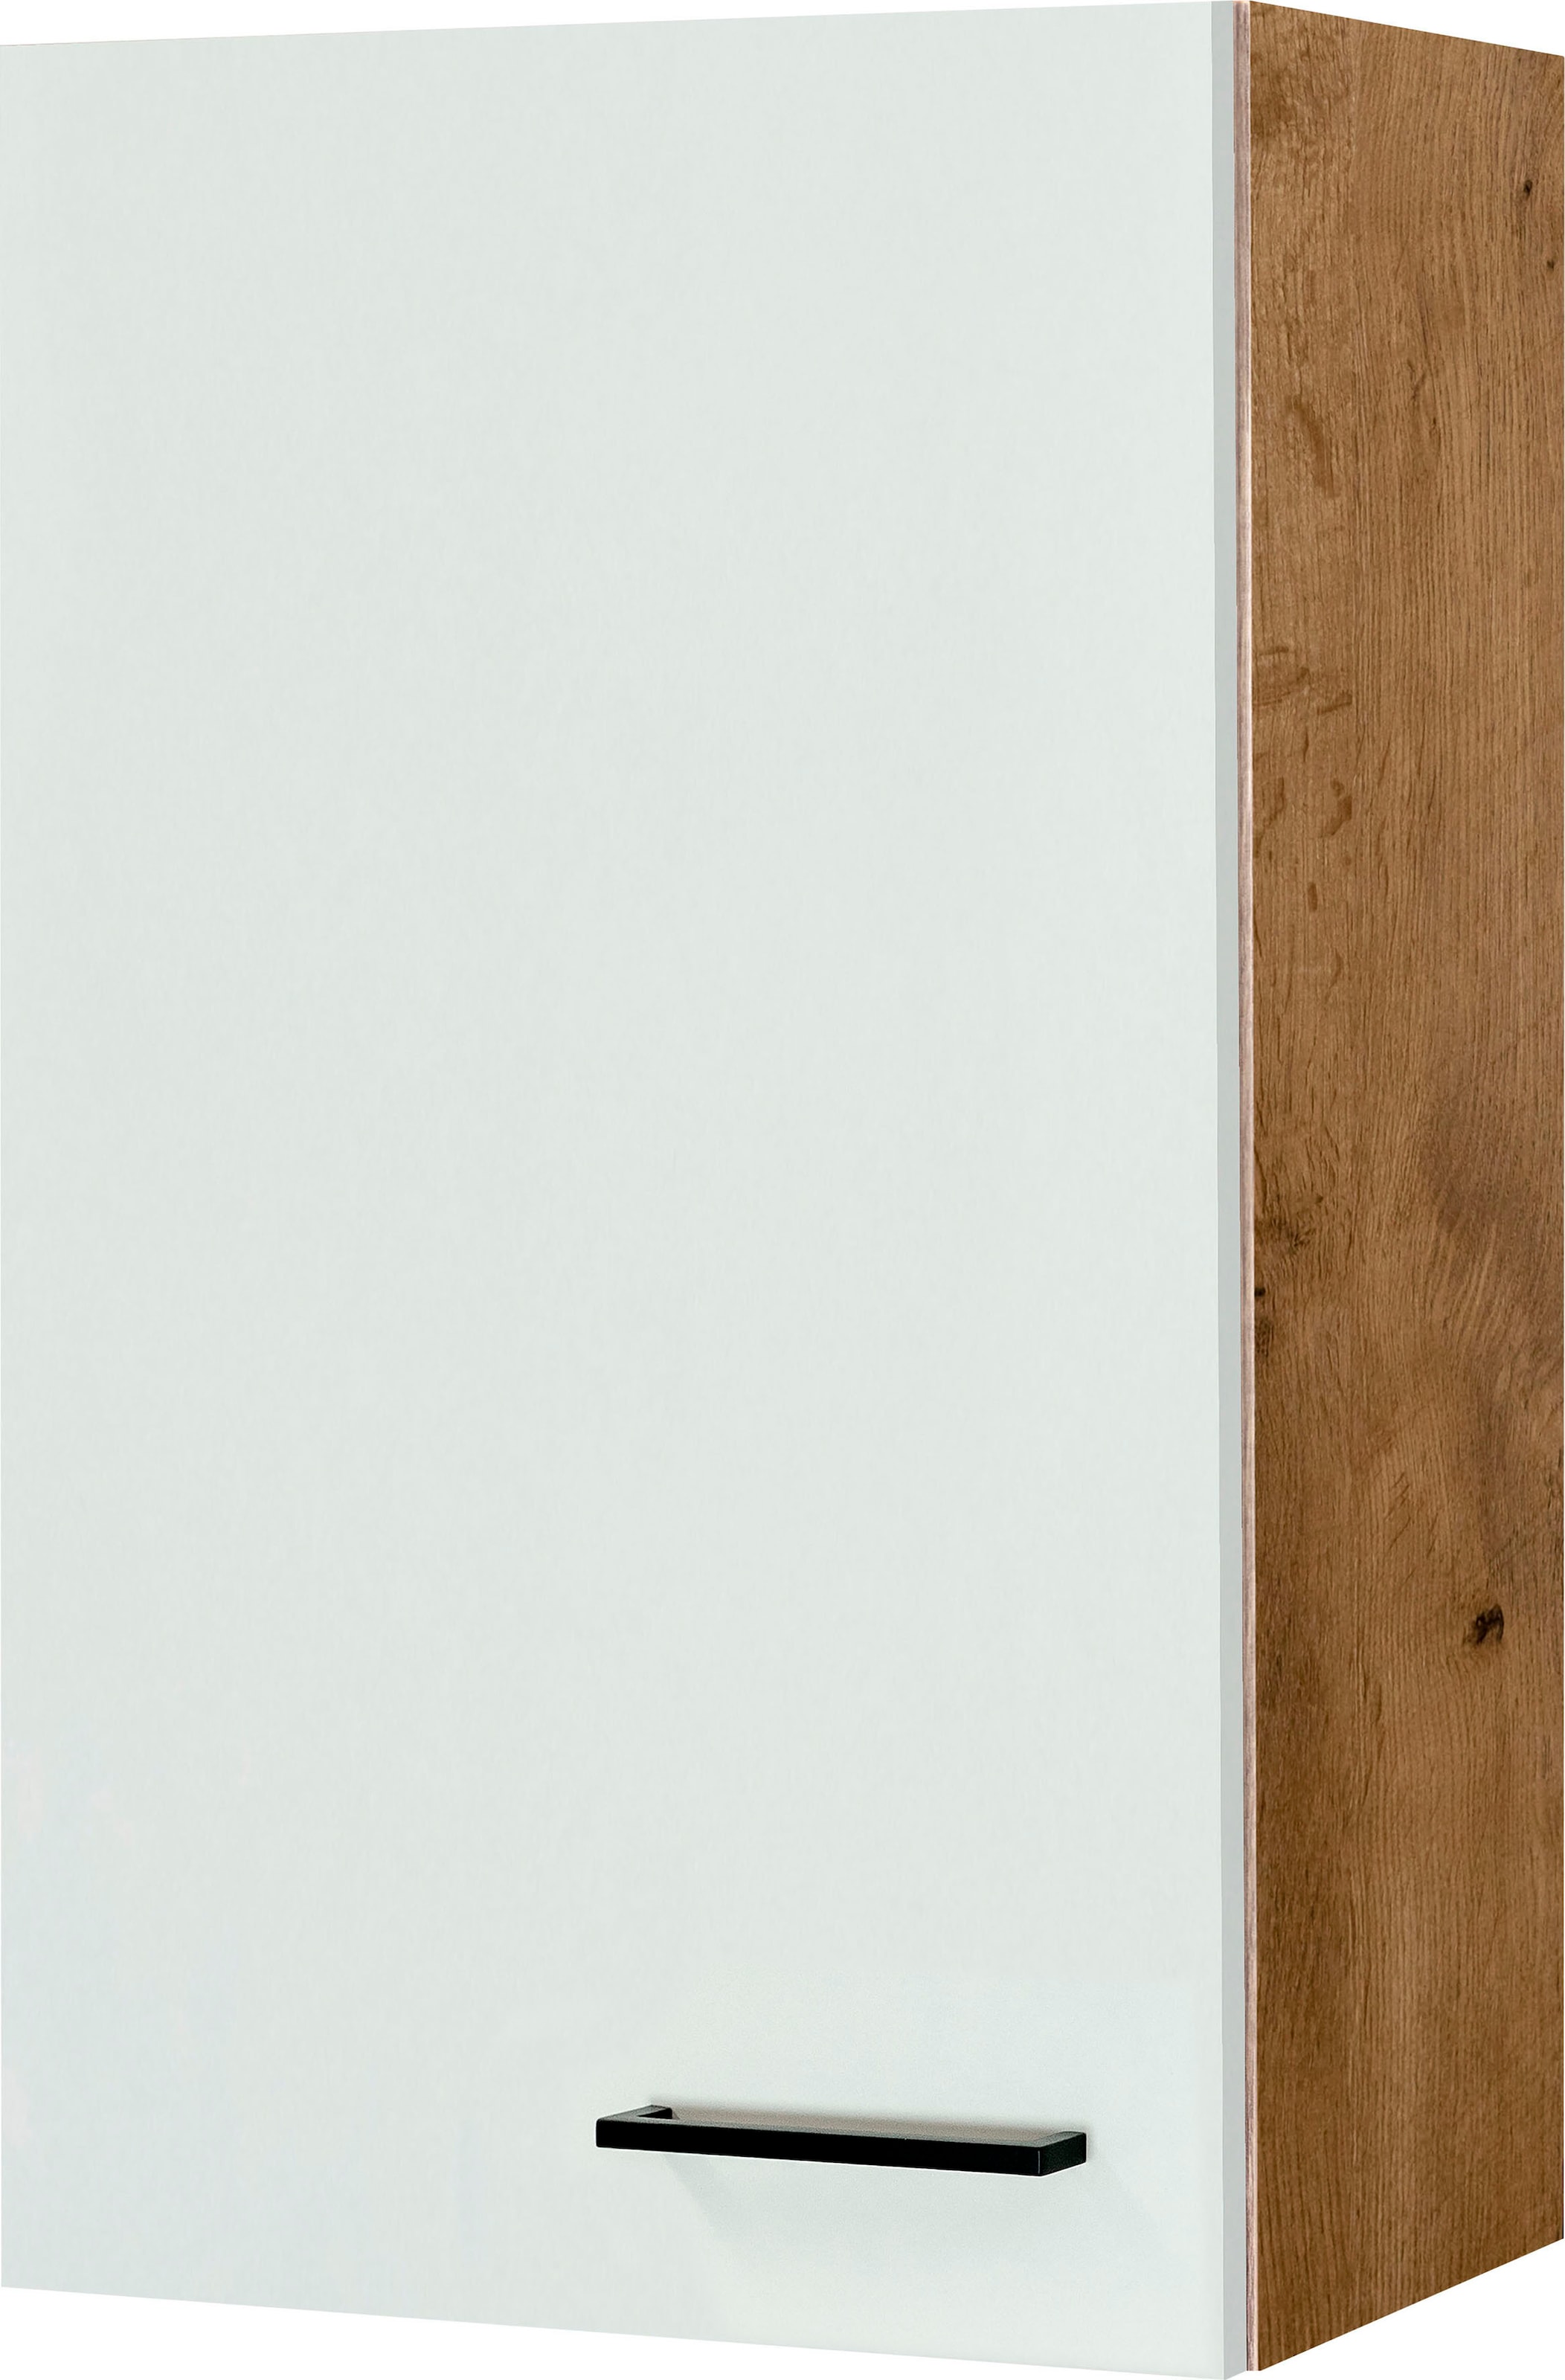 Flex-Well Hängeschrank »Vintea«, (B x H x T) 50 x 89 x 32 cm, für viel Stauraum